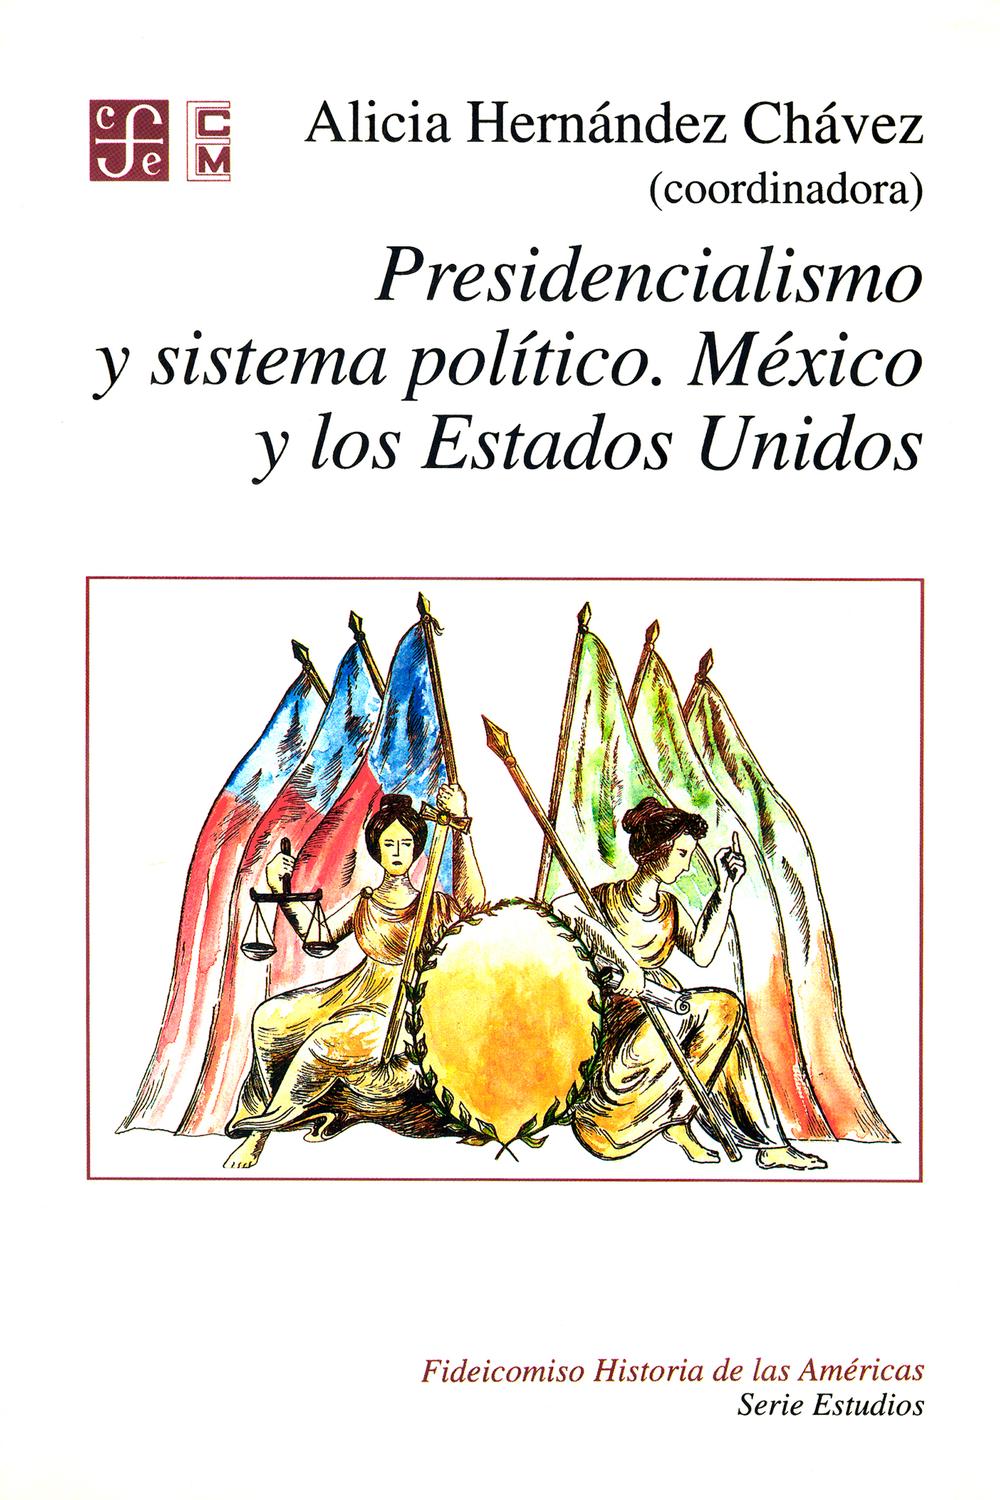 Presidencialismo y sistema político - Alicia Hernández Chávez, Luis F. Aguilar Villanueva, Sergio Fabbrini, William E. Leuchtenburg, James L. Sundquist, Alicia Hernández Chávez